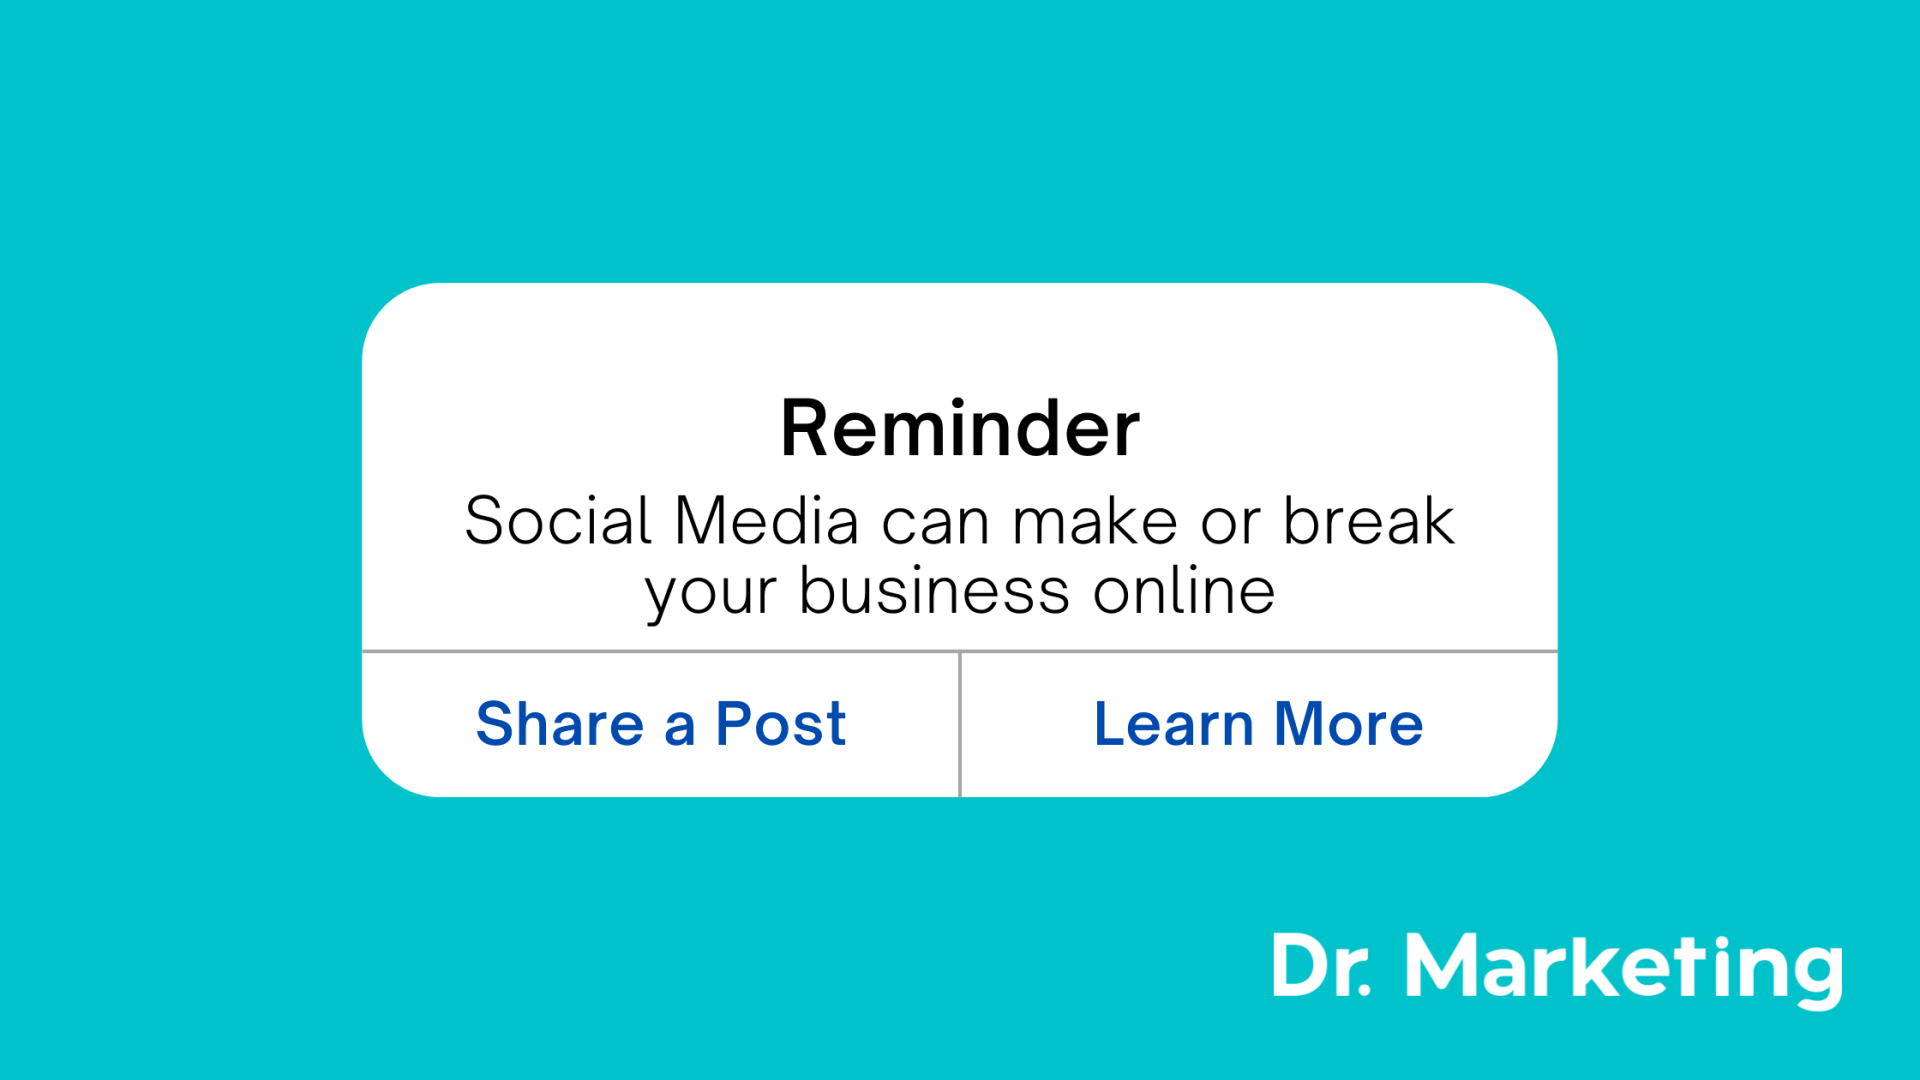 Social Media | Social Media Management | Marketing | Social Media Reminder | Social Media Essentials